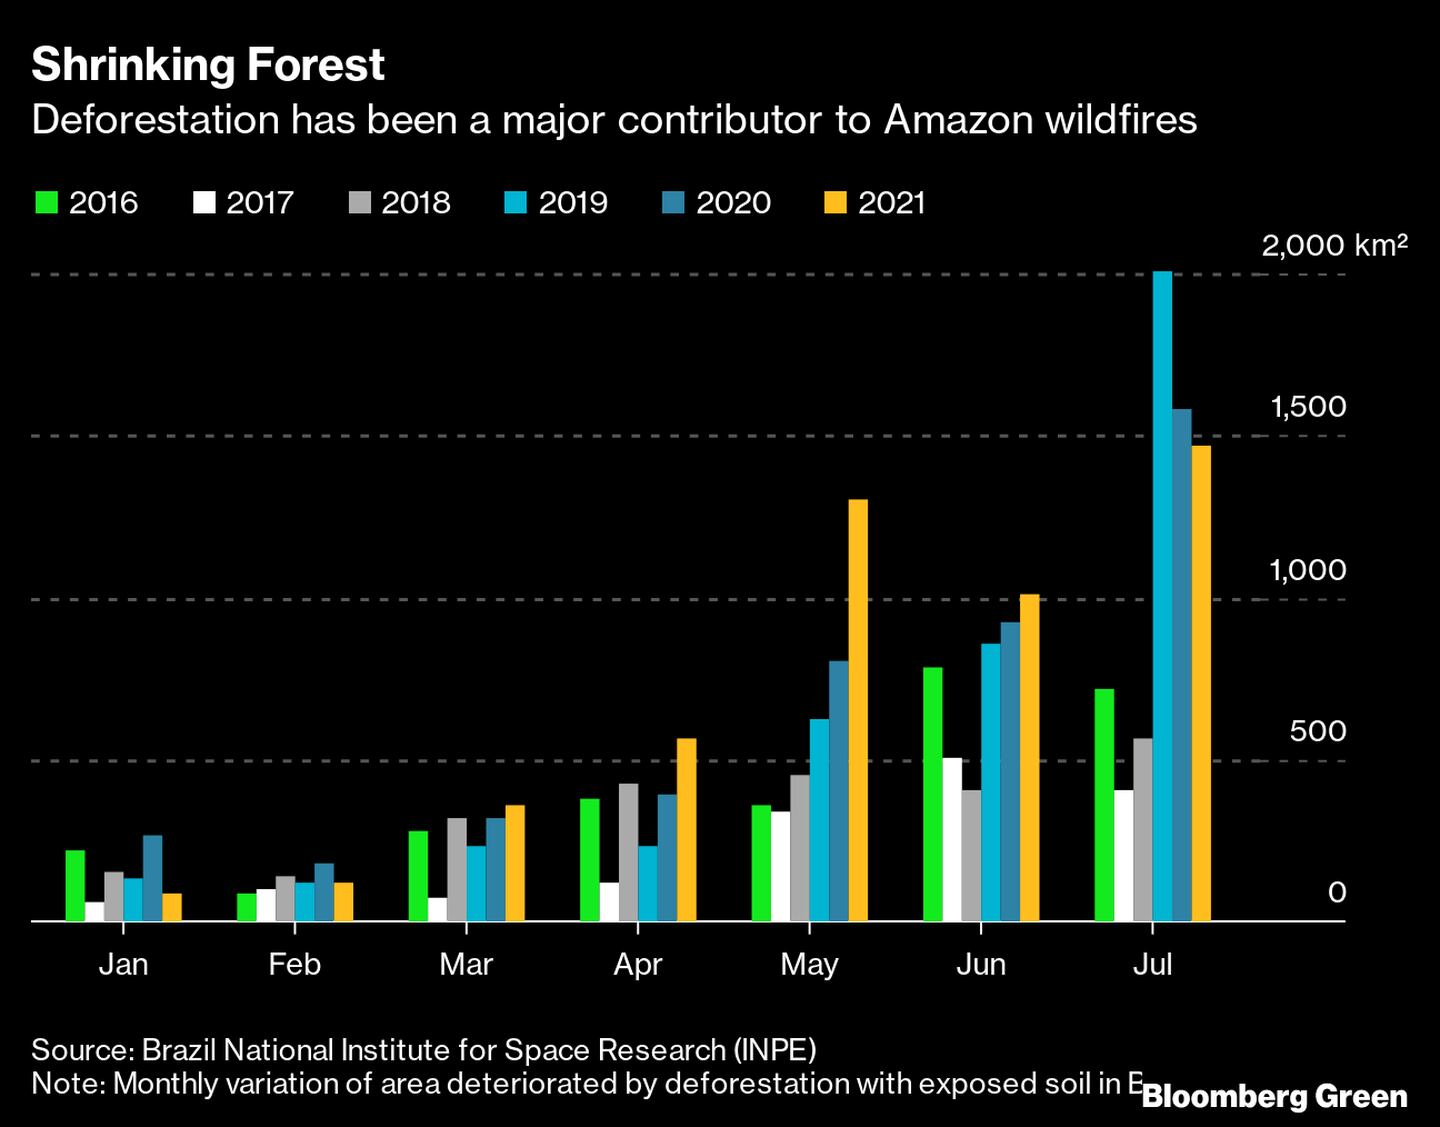 La deforestación ha sido una de las principales causas de los incendios forestales en el Amazonas. dfd